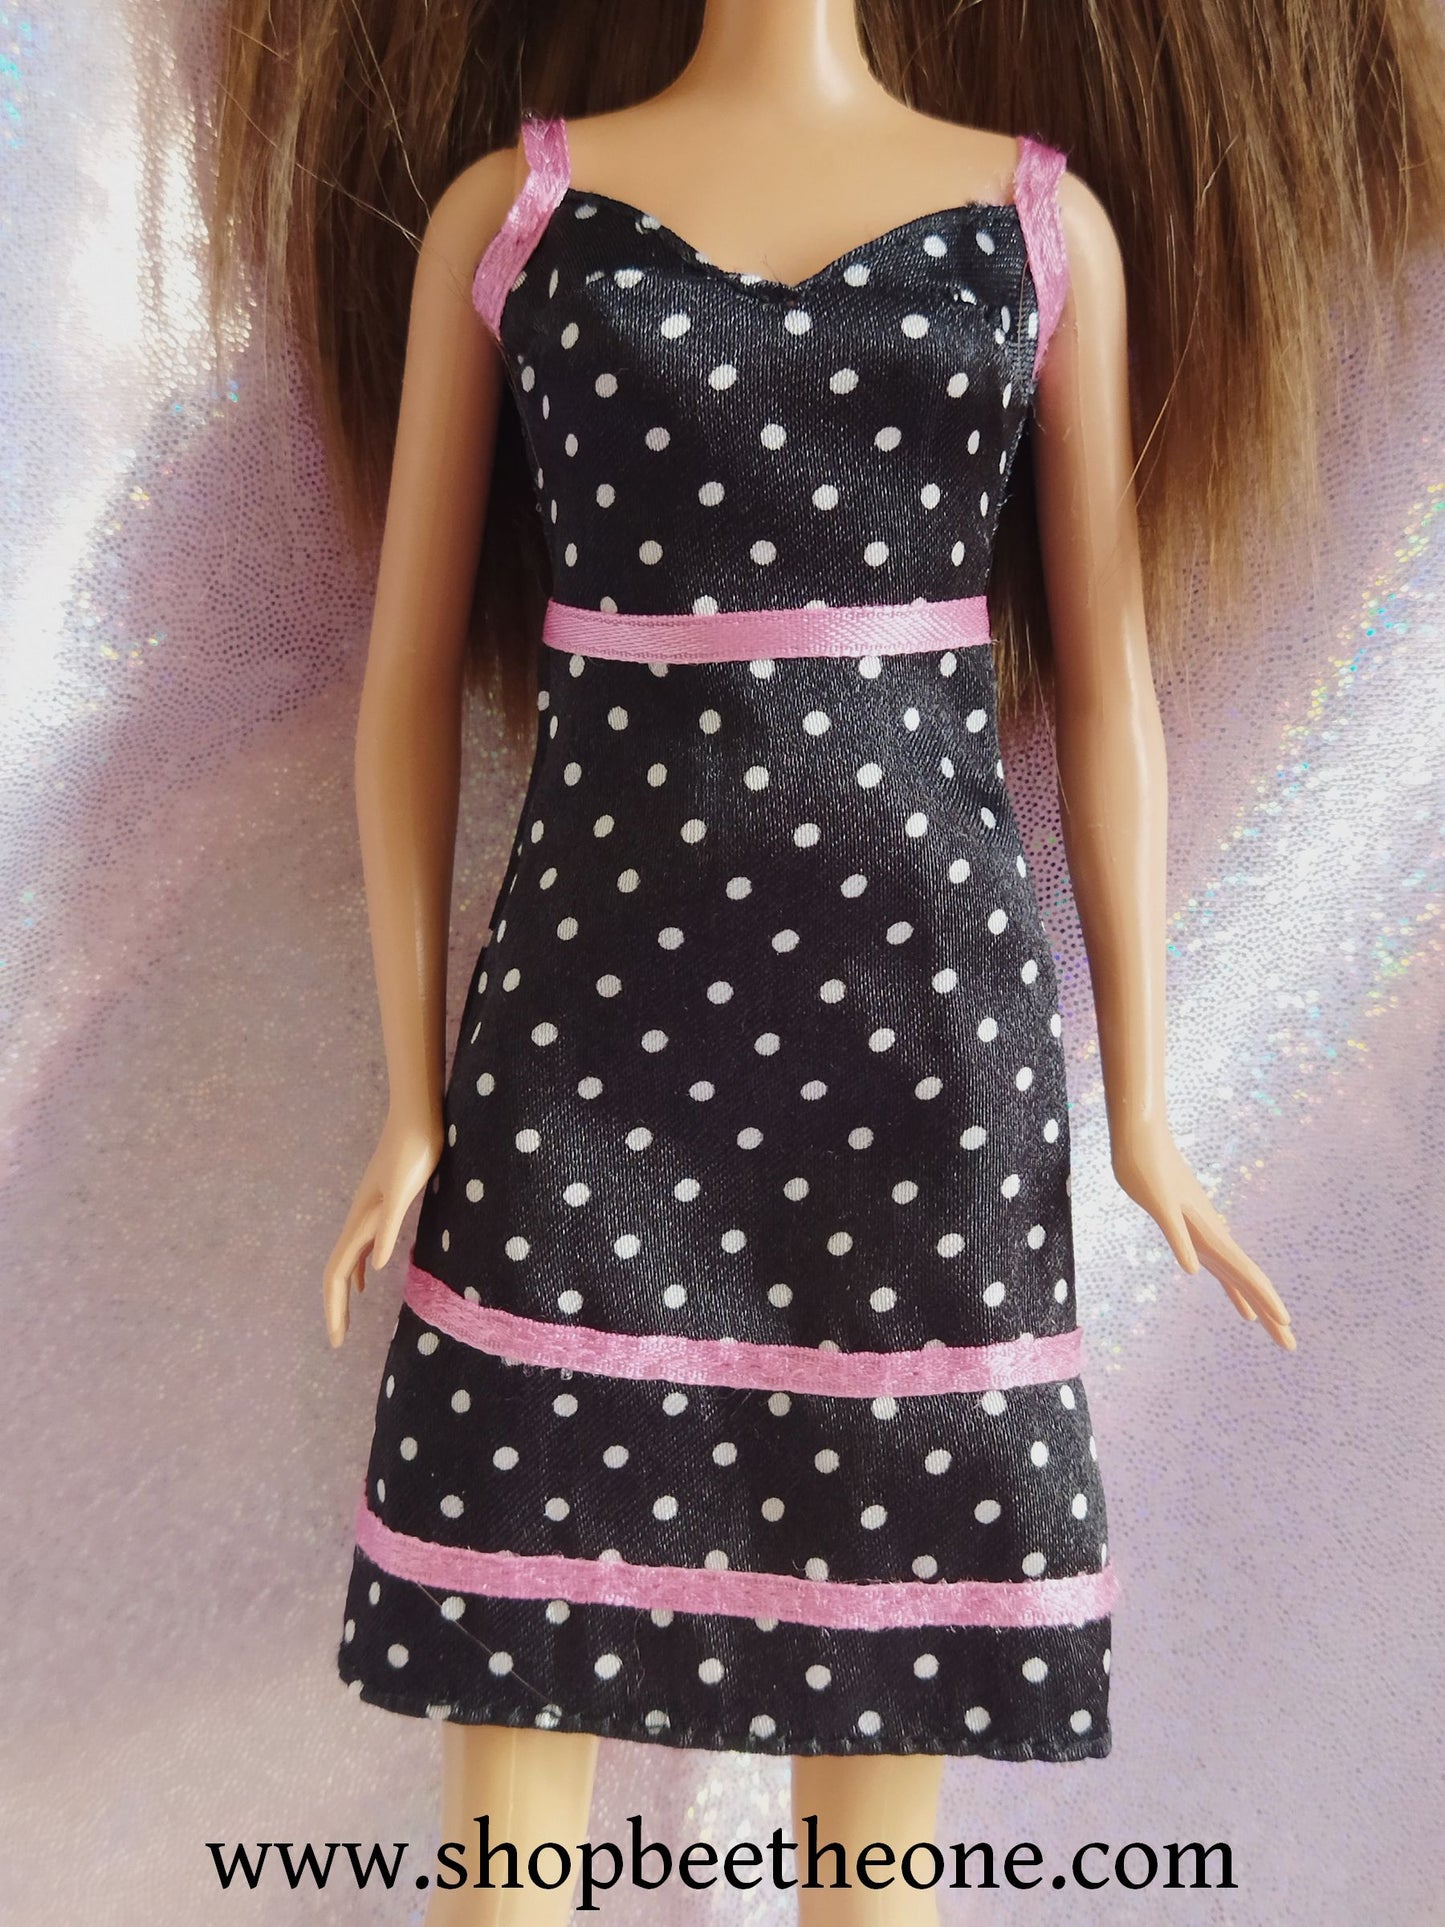 Barbie Fashion "Robe noire à pois" / Vie de rêve "Barbie en montgolfière" - Mattel 2005/2006 - Vêtement